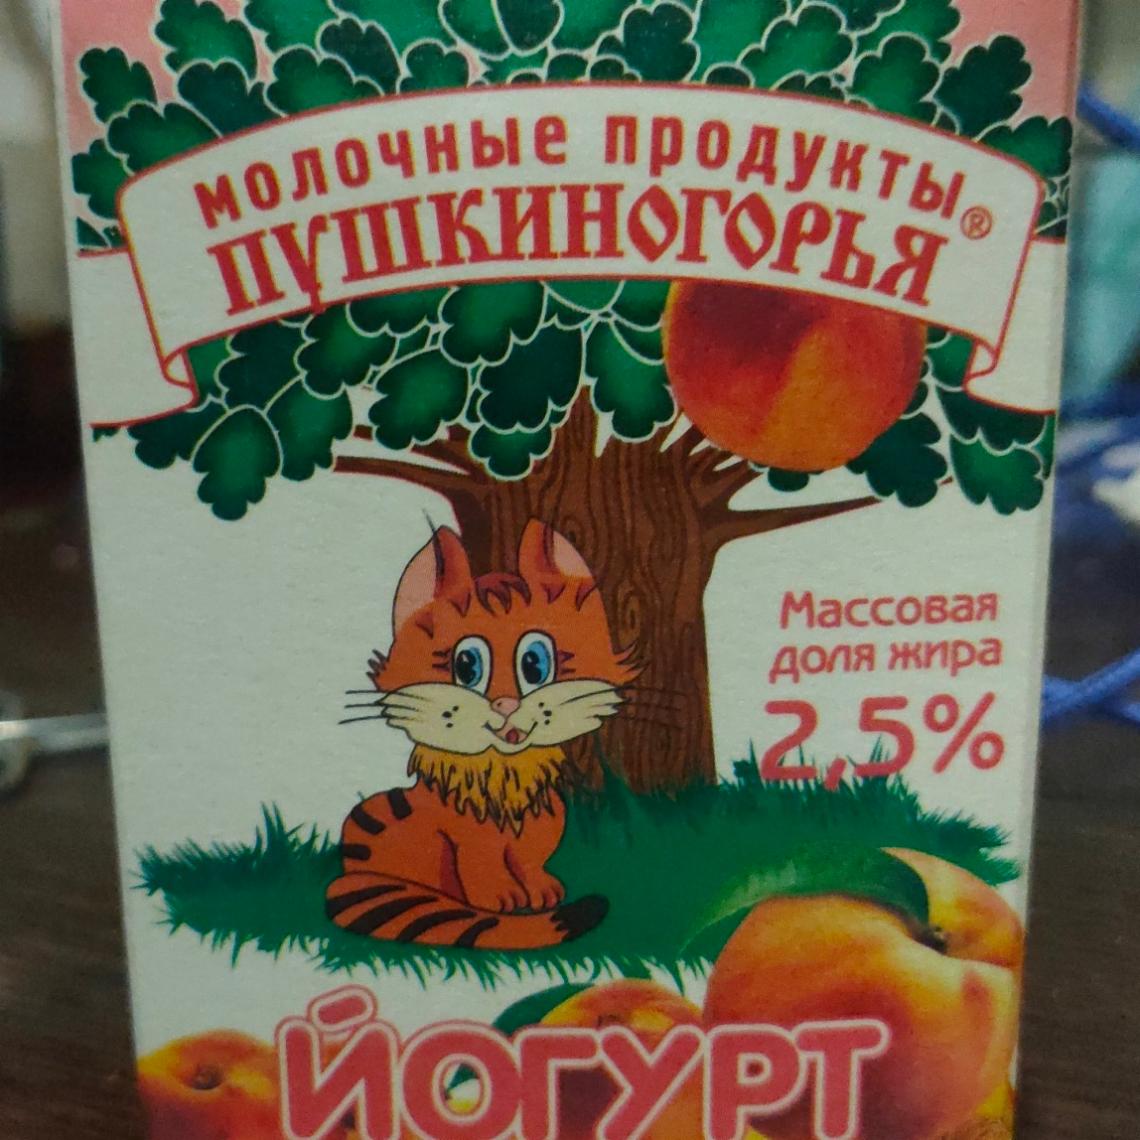 Фото - йогурт персиковый Молочные продукты Пушкиногорья